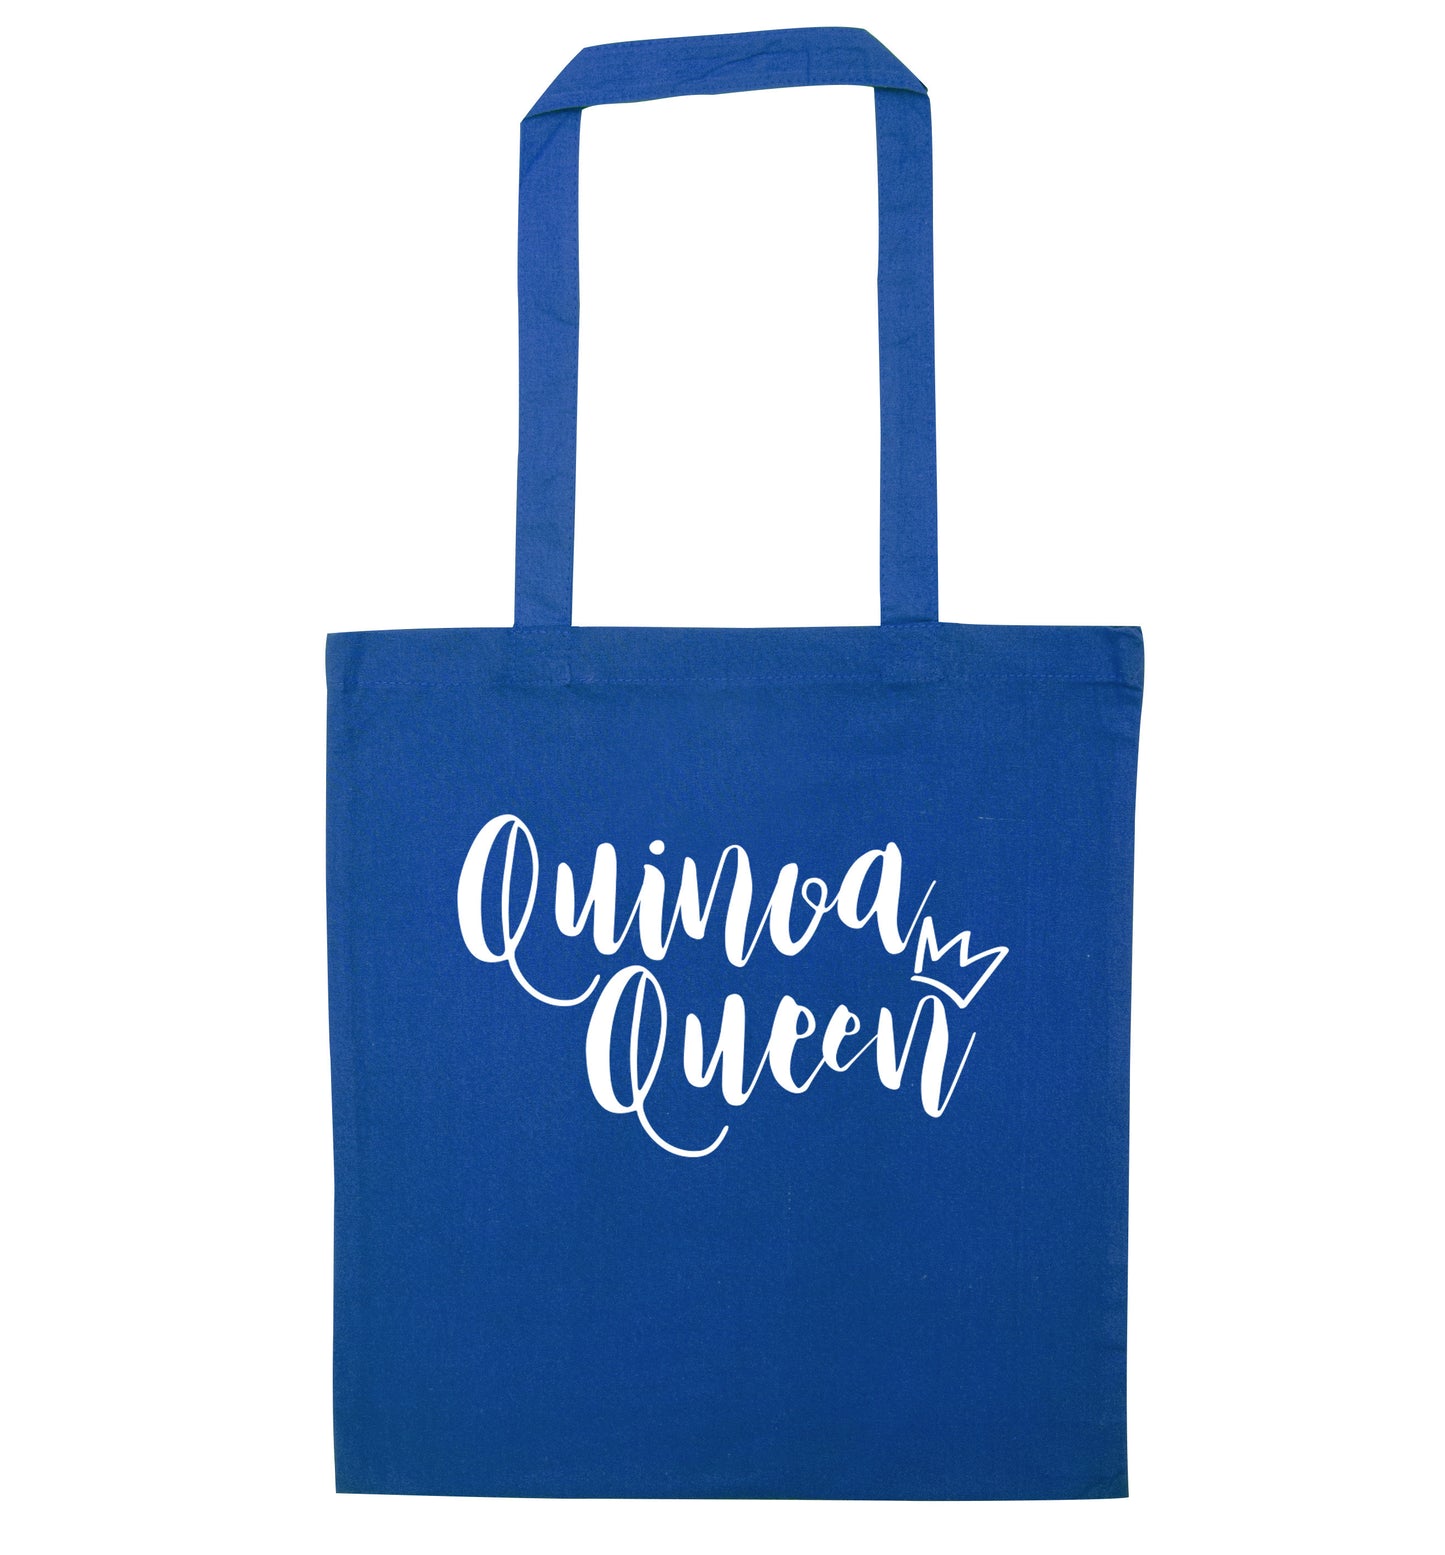 Quinoa Queen blue tote bag